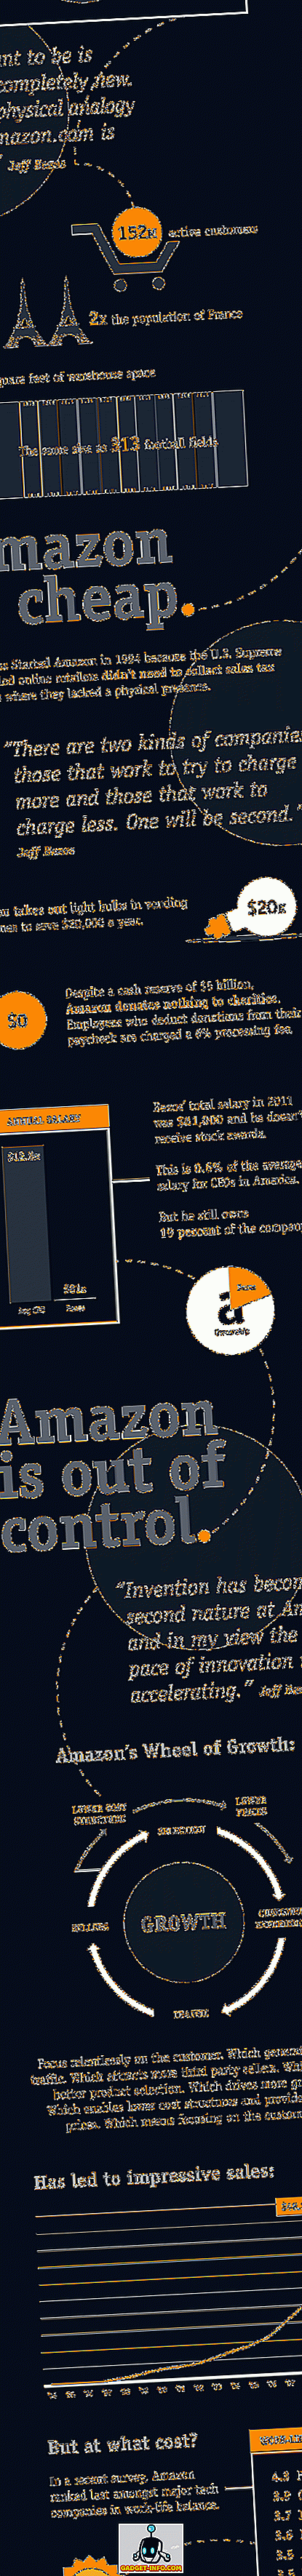 Amazon - Vnitřní příběh [Infographic]